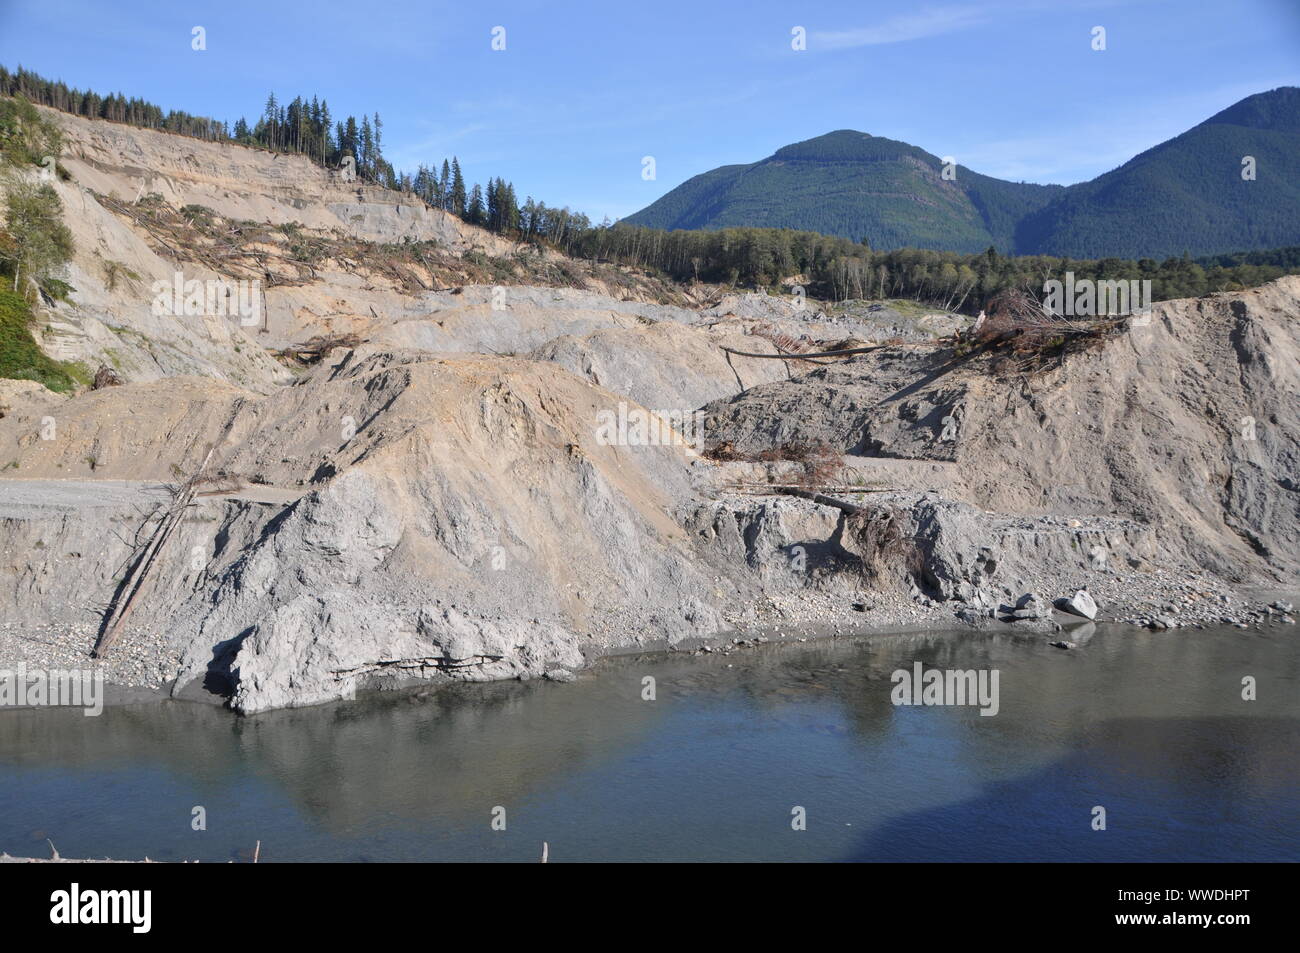 2014 Oso Landslide y el río Stillaguamish de North Fork, condado de Snohomish, Washington, EE.UU Foto de stock